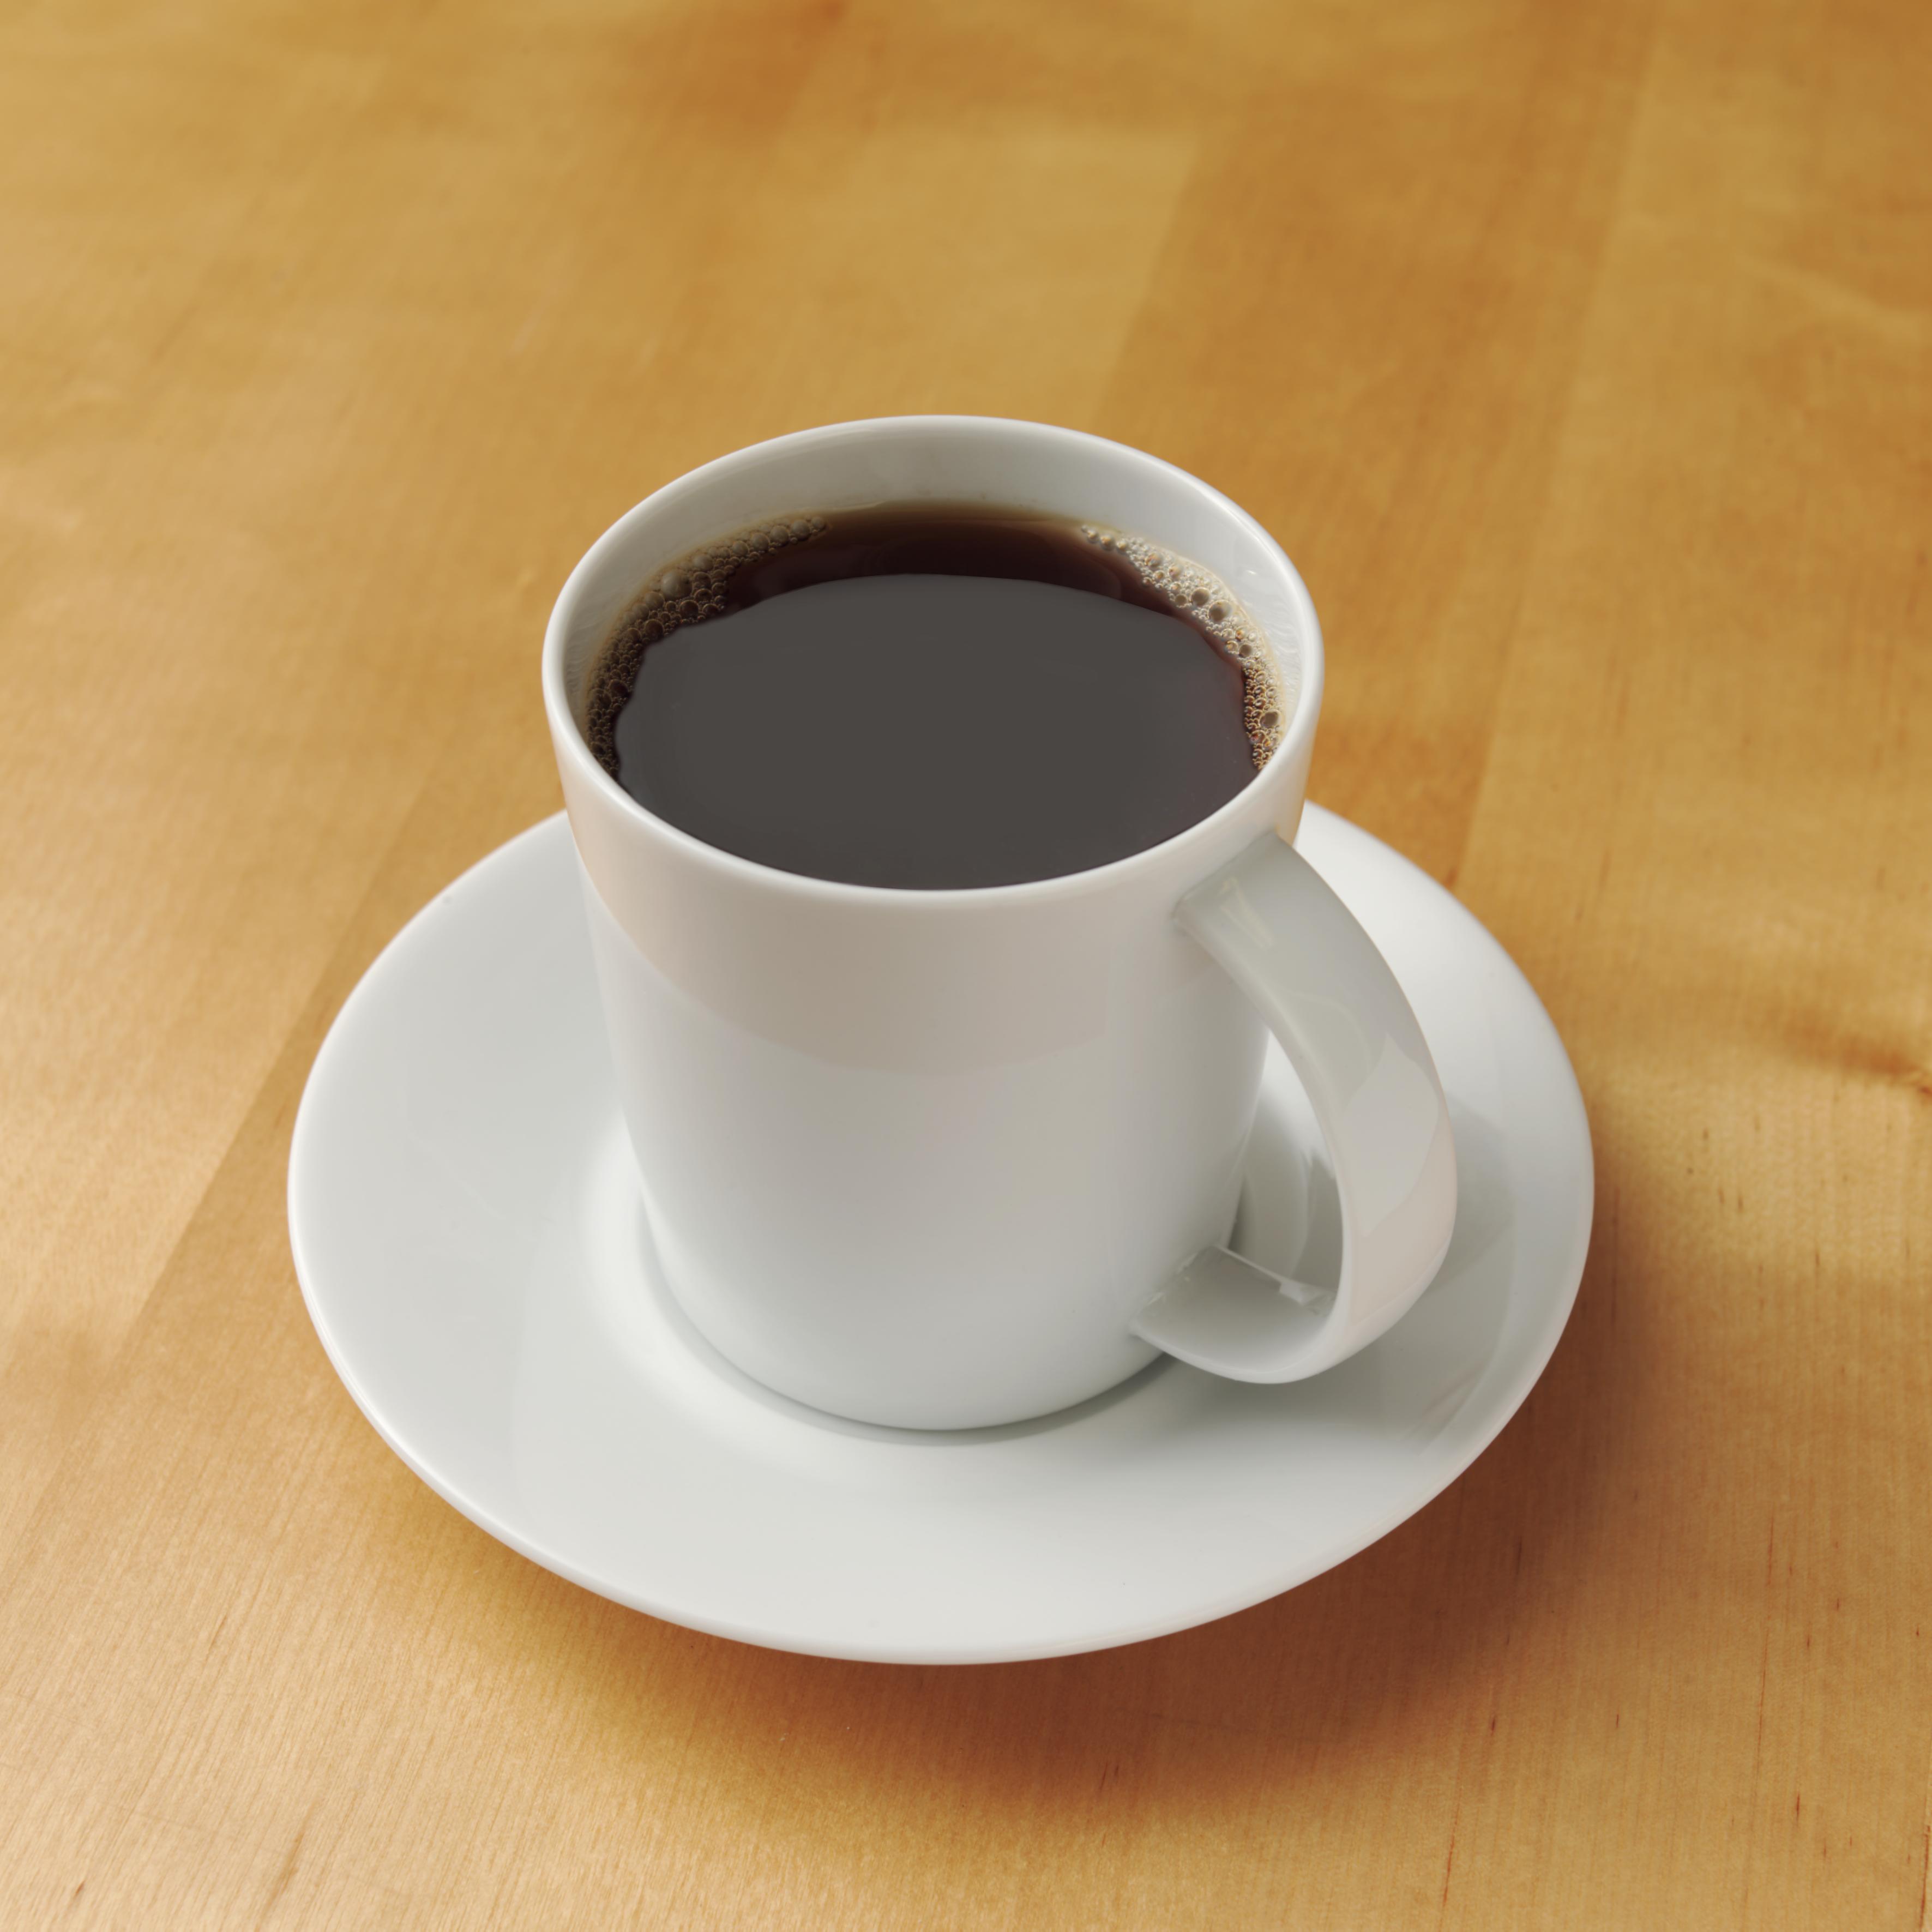 OEstlendinger-drikker-1-6-milliarder-kopper-kaffe-i-aaret.jpg